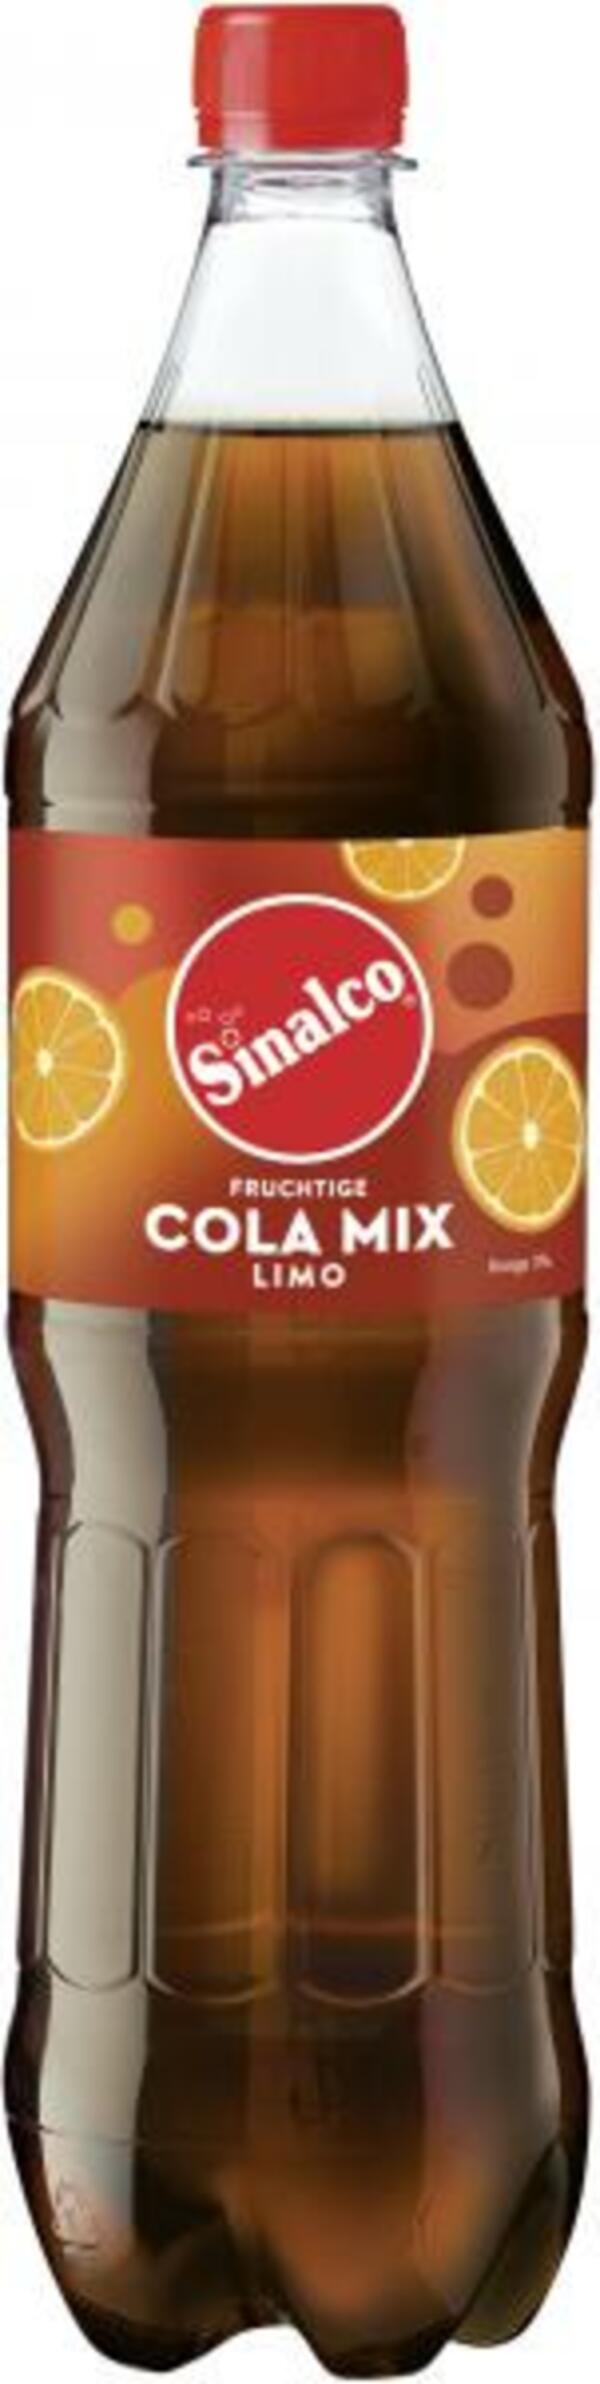 Bild 1 von Sinalco Cola-Mix (Einweg)